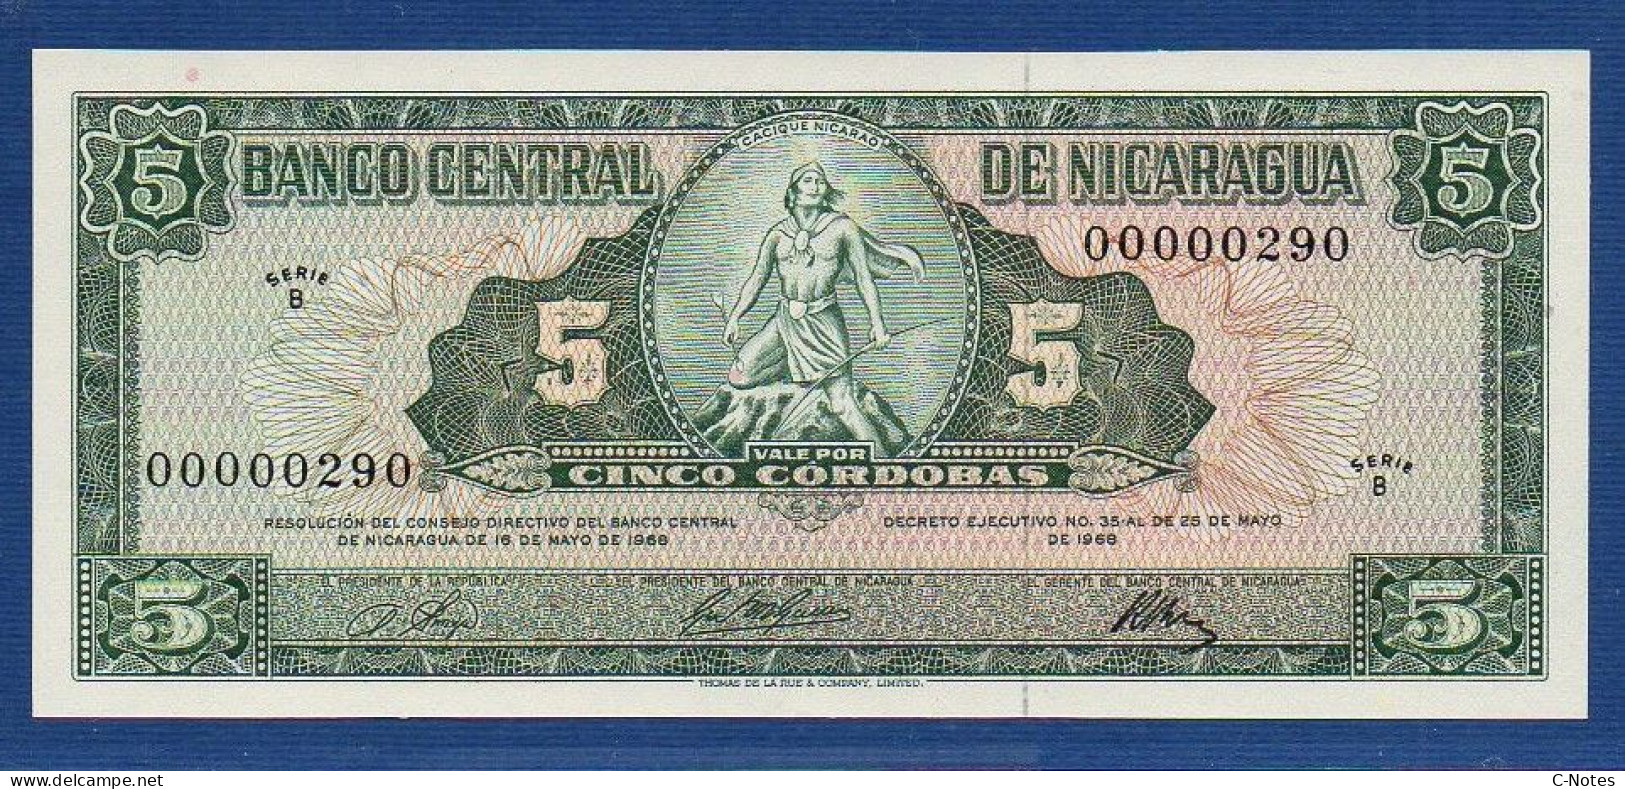 NICARAGUA - P.116 – 5 Córdobas 1968 UNC, S/n B 00000290 Very LOW Serial Number - Nicaragua